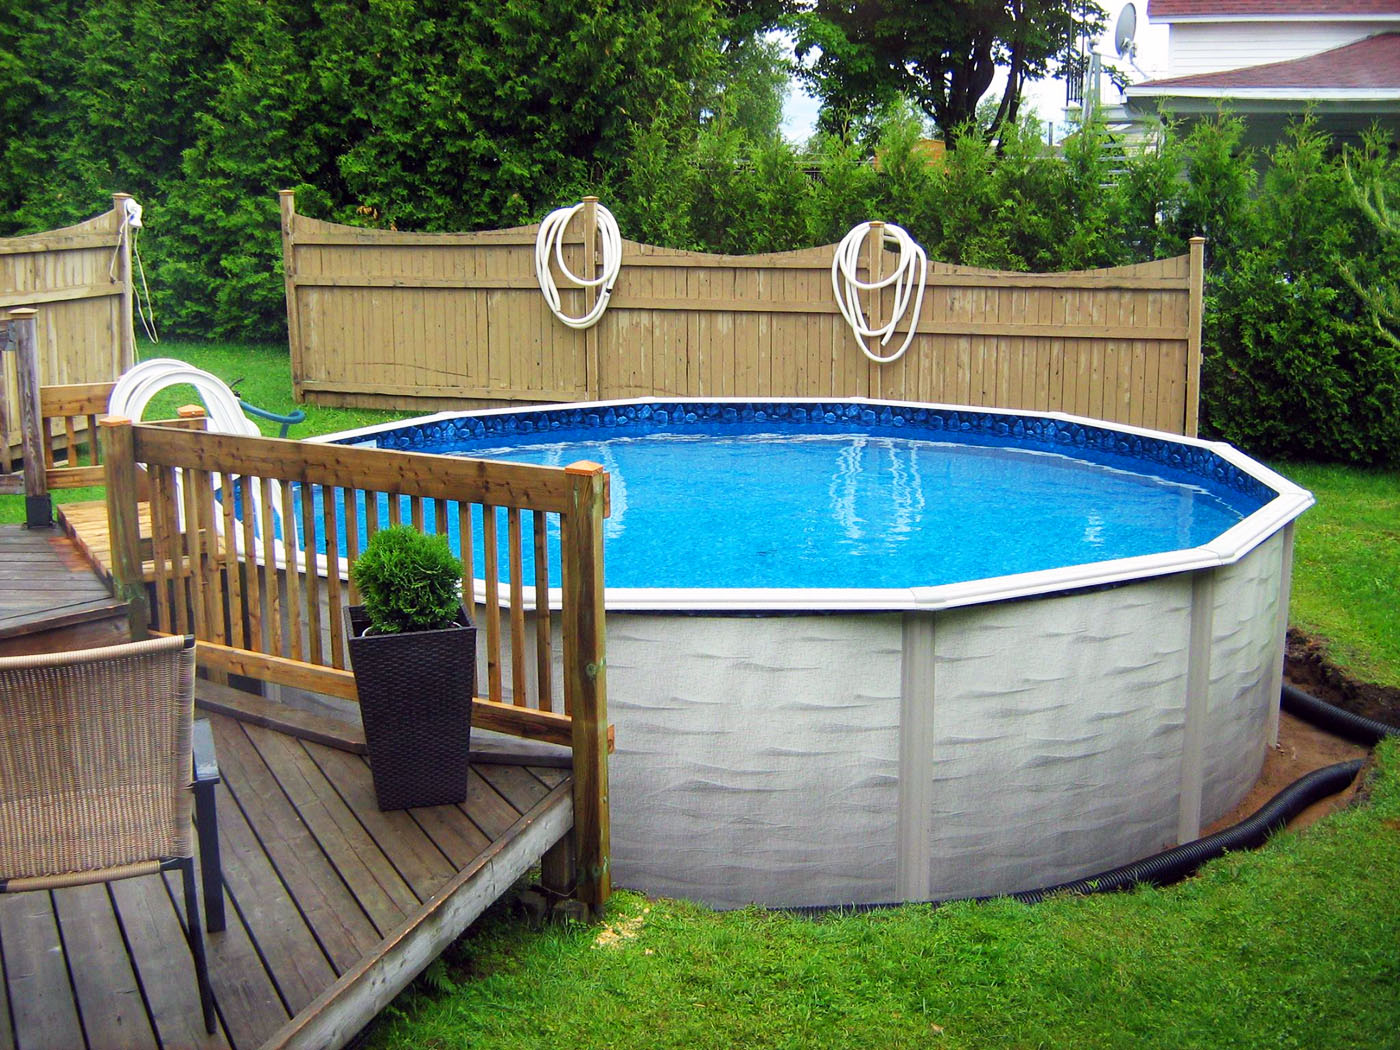 Недорогие варианты бассейнов 🏚 для двора и дачи и как сделать самостоятельно